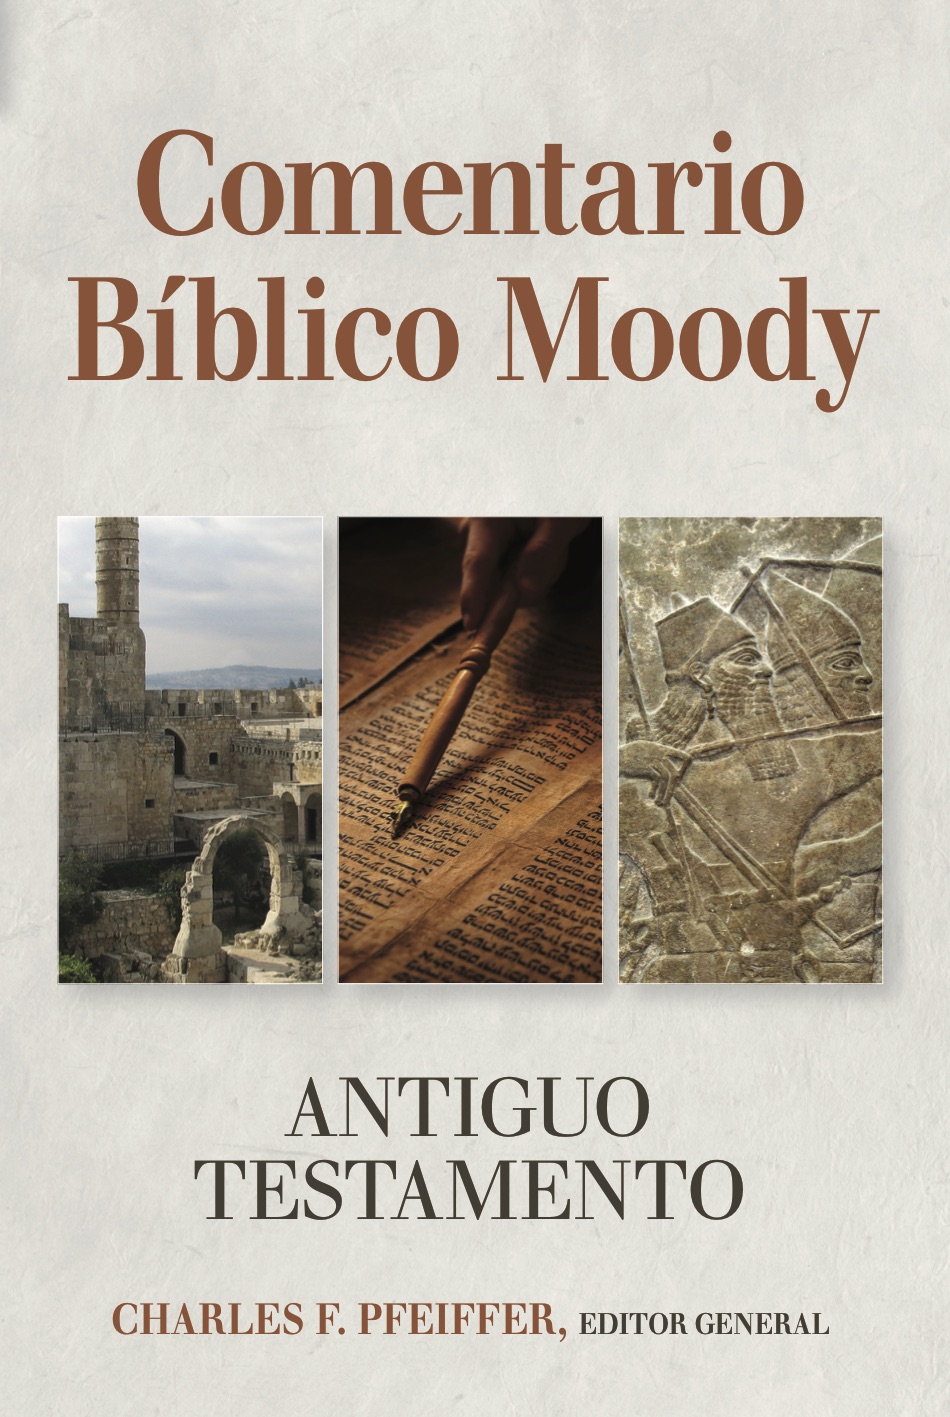 Comentario Bíblico Moody del Antiguo Testamento